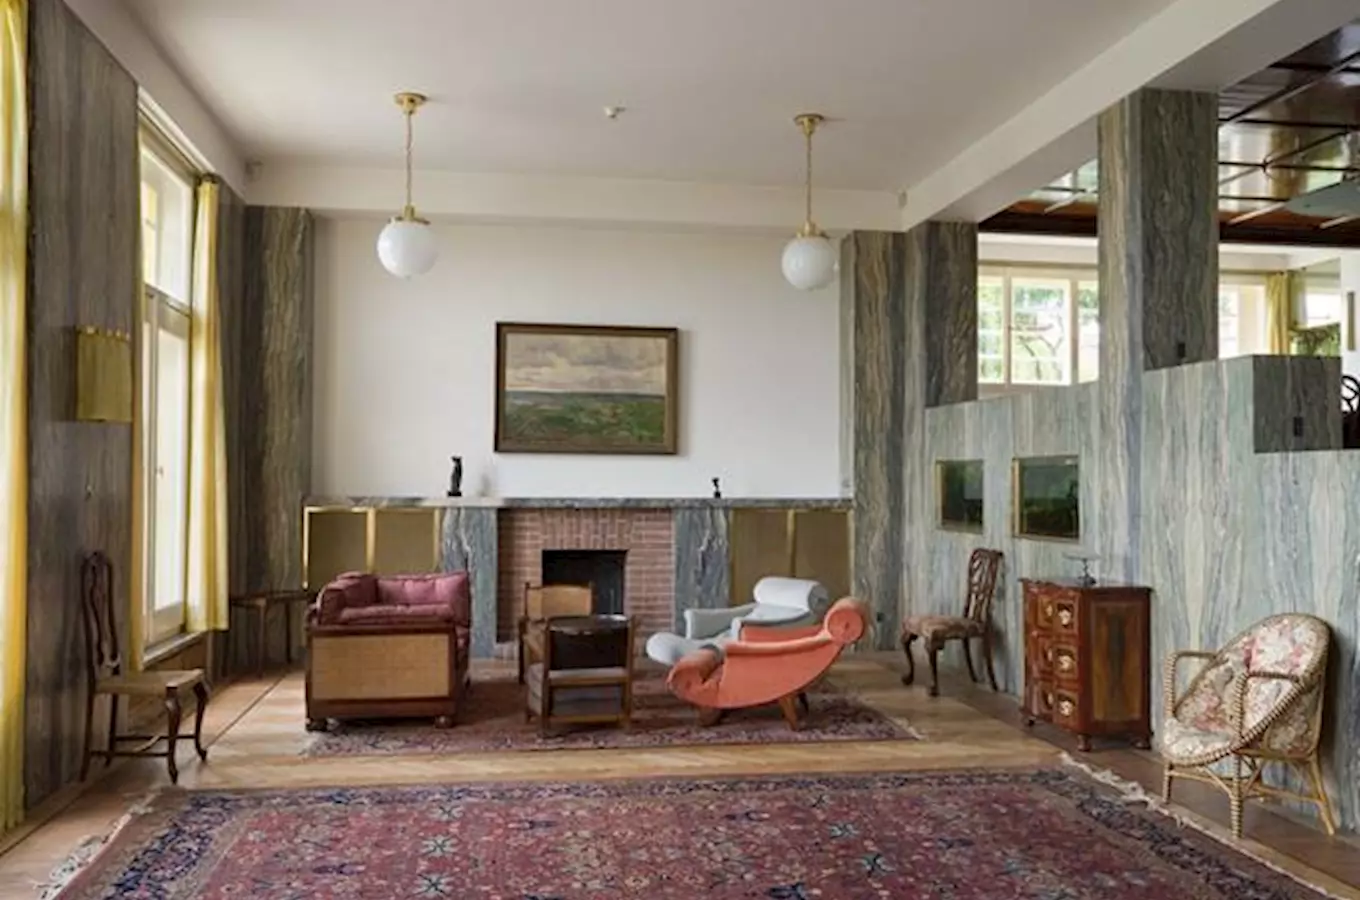 Vily a bytové interiéry: znáte nejznámější díla architekta Adolfa Loose?